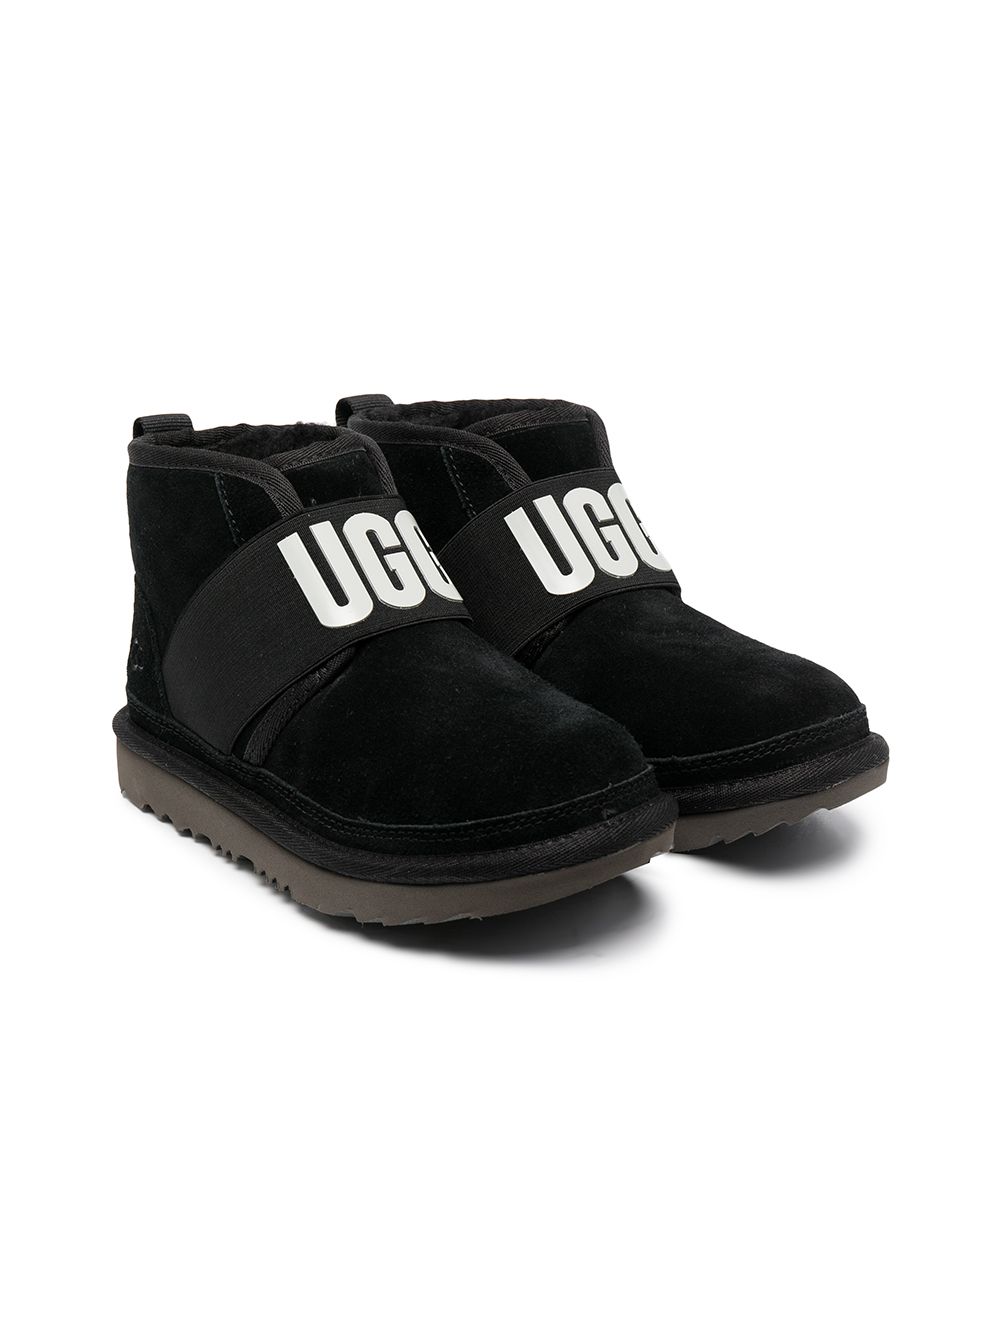 UGG Kids Neumel II sheepskin boots - Black von UGG Kids